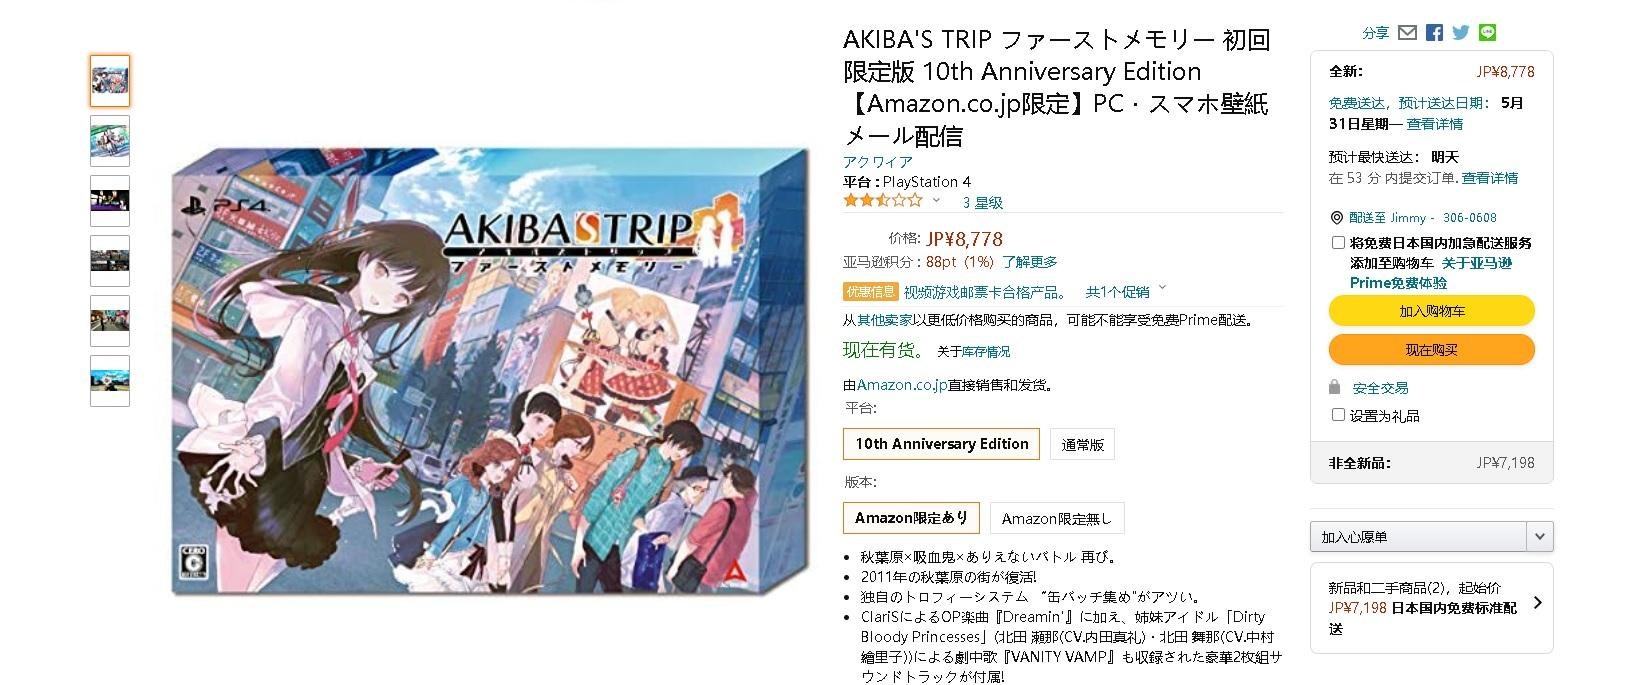 心得 心得 Akiba S Trip First Memory 日本初回限定版 簡易開箱 Ps4 Playstation4 哈啦板 巴哈姆特